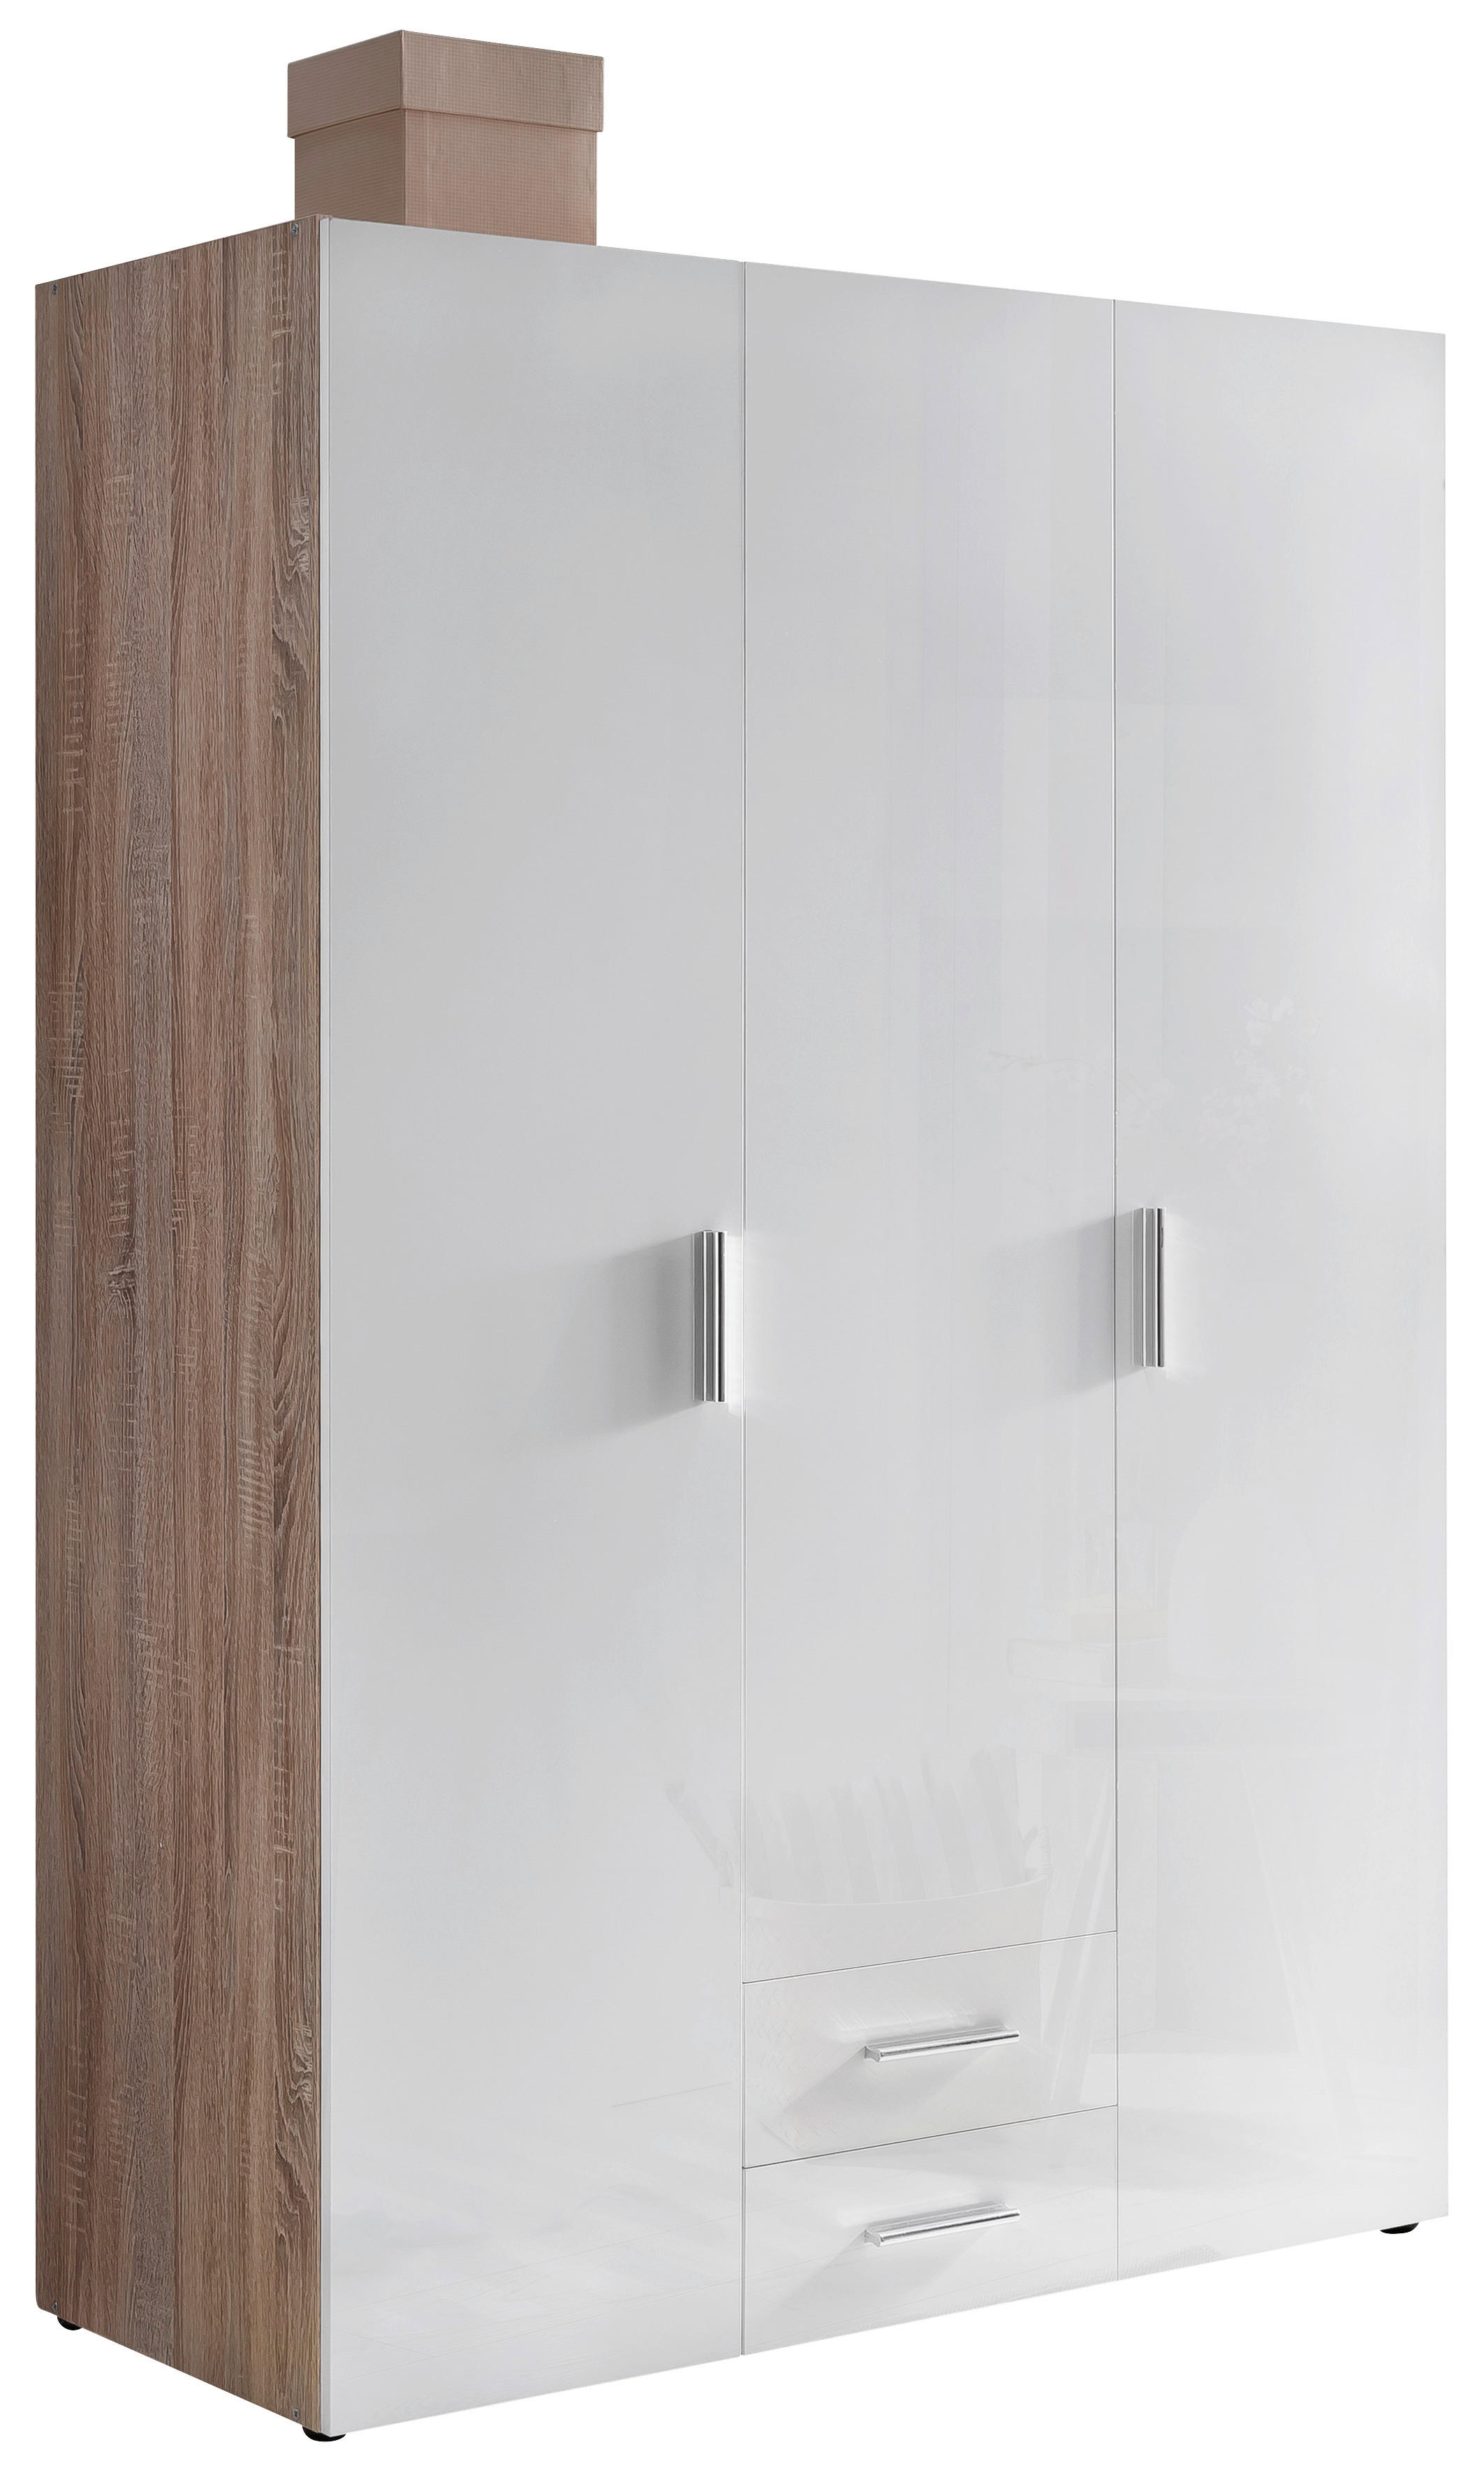 Xora SKŘÍŇ NA ODĚV, bílá, barvy dubu, 120/185/54 cm - bílá,barvy dubu - kompozitní dřevo